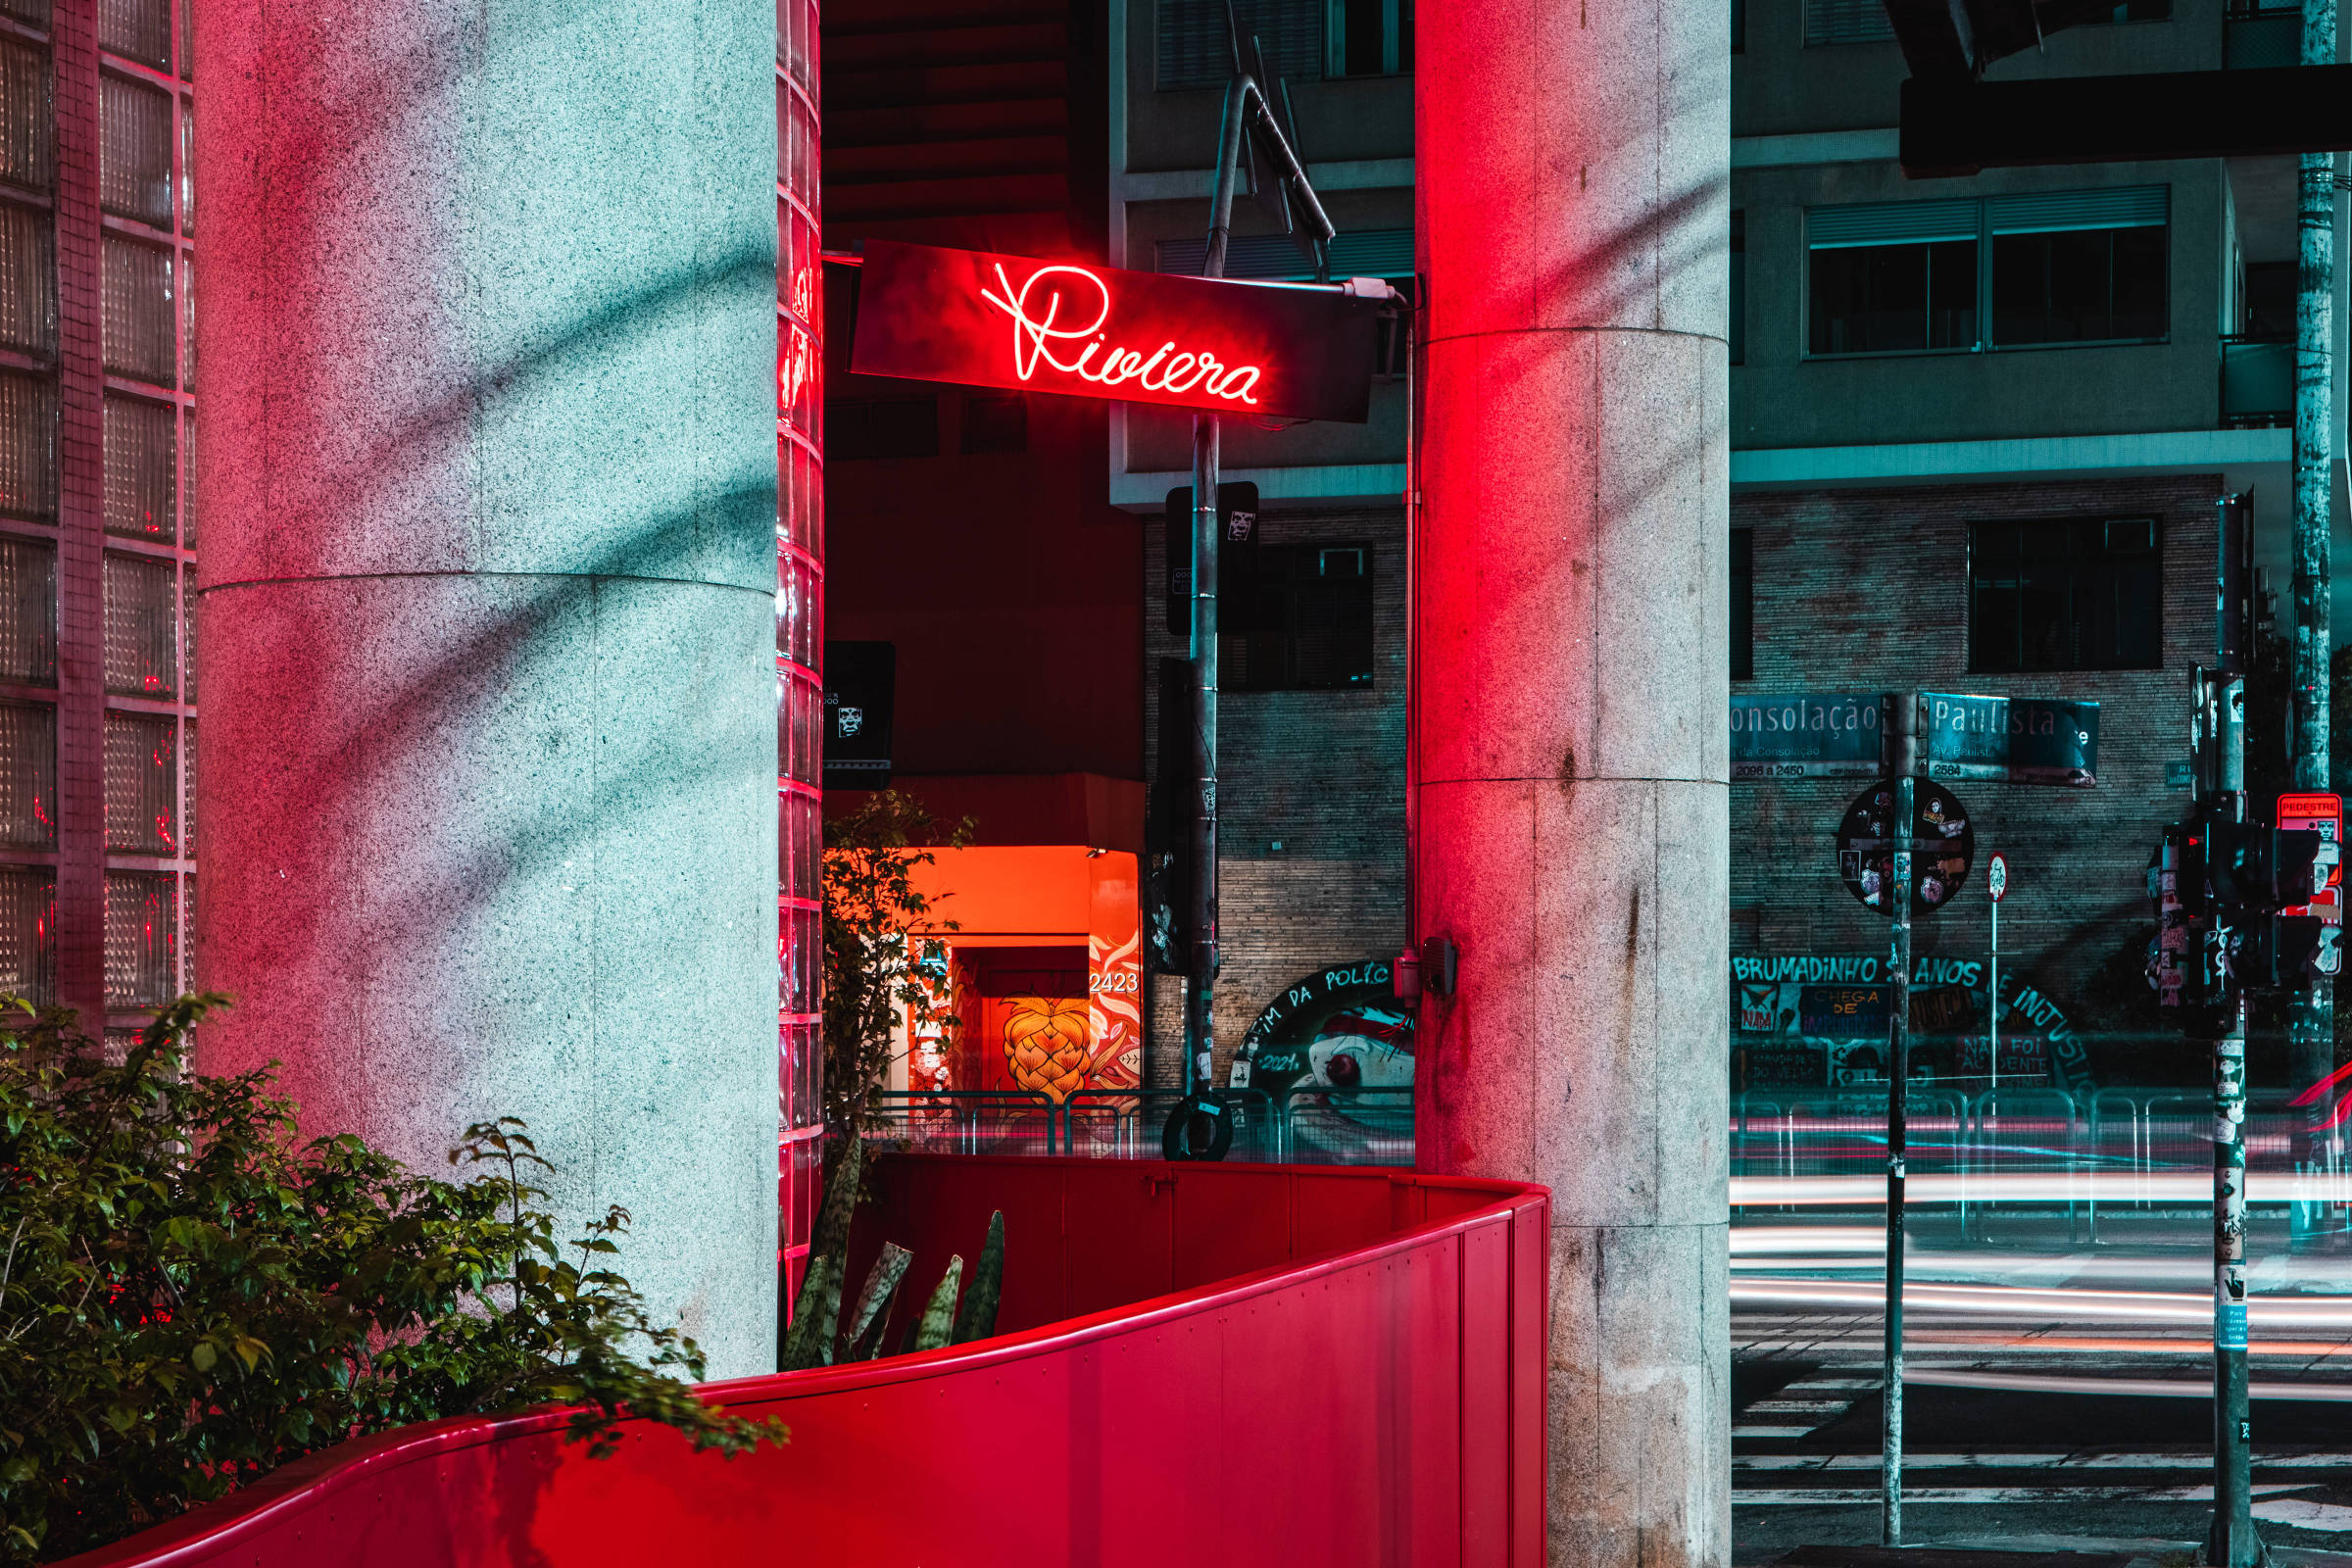 Riviera, bar inaugurado em 1949, é reaberto em SP e agora funciona 24 horas - 21/02/2022 - Bares e noite - Guia Folha